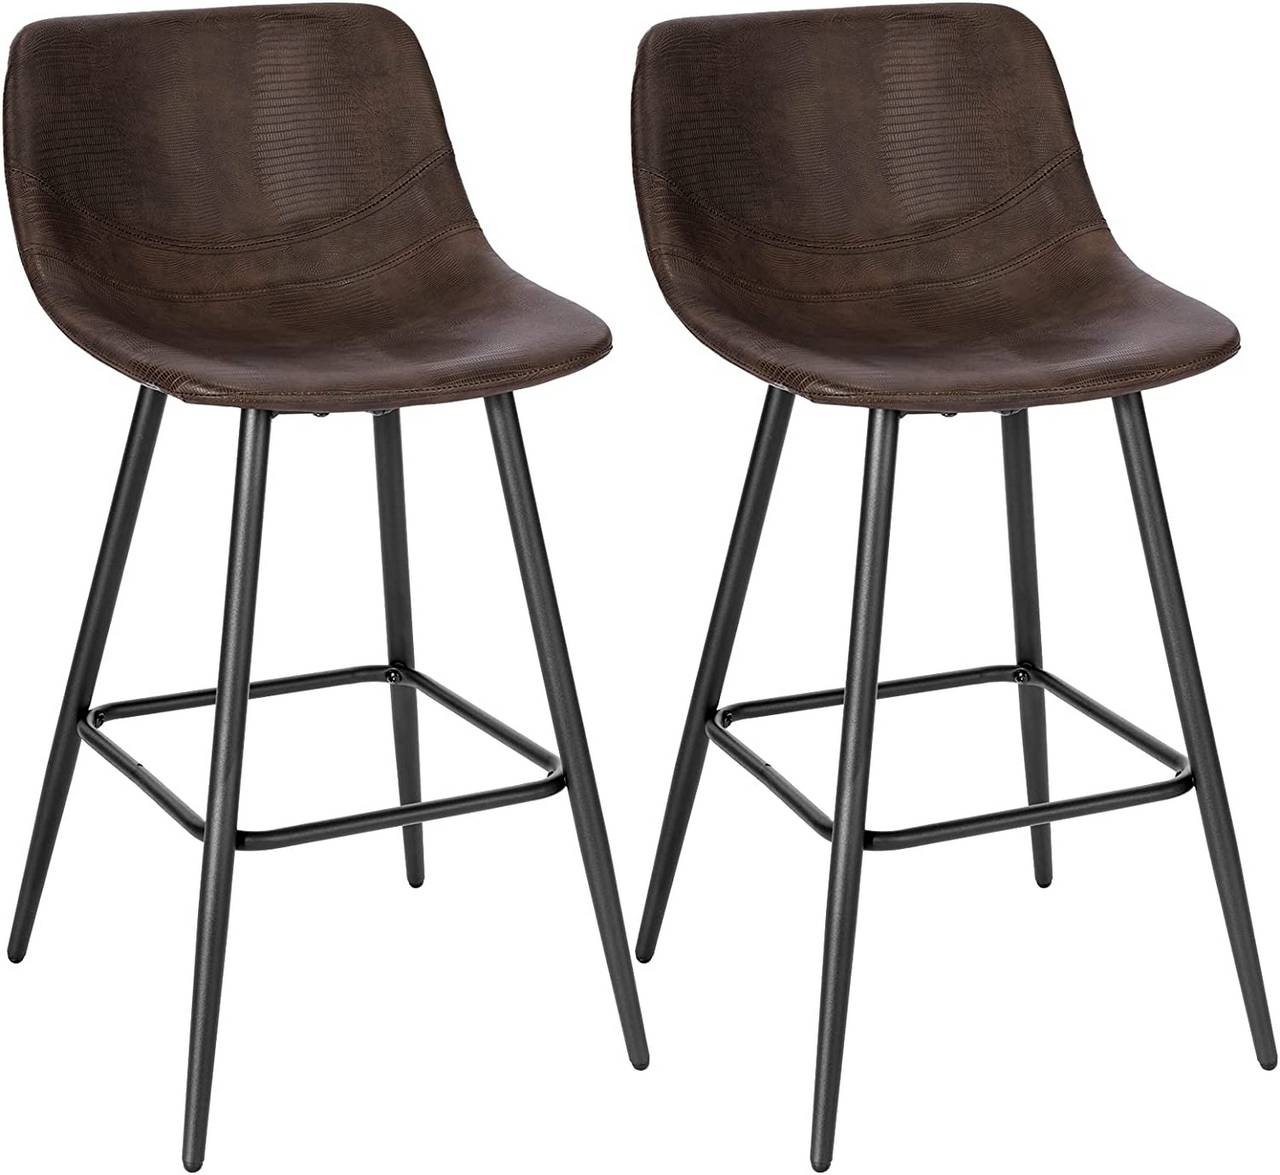  lirrebol Juego de 2 taburetes de bar de lino de 65/29.5 in,  sillas de bar altas con patas de metal negro, taburete de cocina alto con  respaldo para barra de desayuno